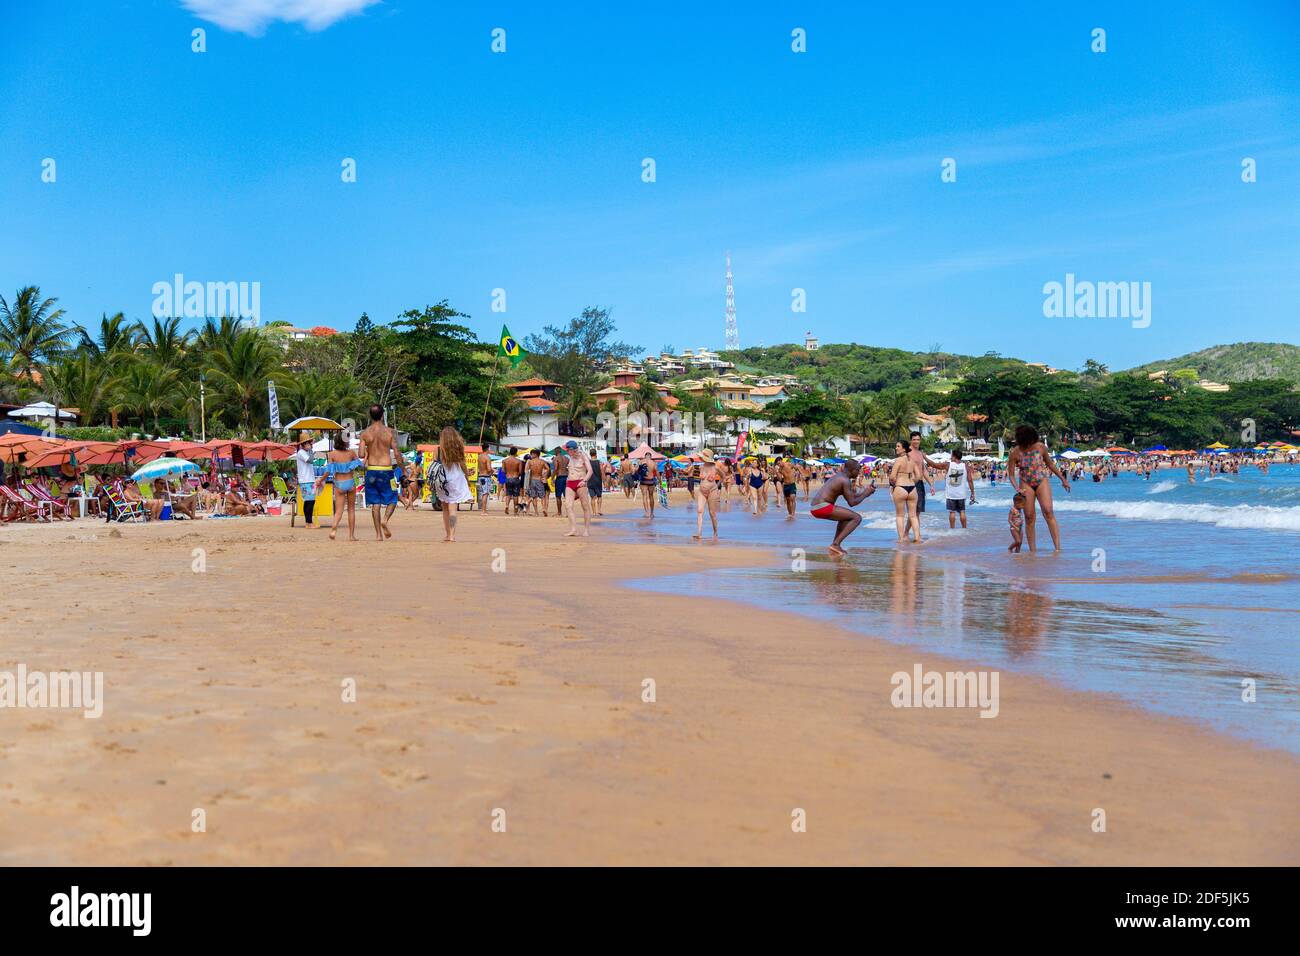 Buzios, Rio de Janeiro, Brésil – 22 décembre 2019 : Praia da Geriba, vue panoramique de cette belle plage. Les gens aiment la plage Banque D'Images